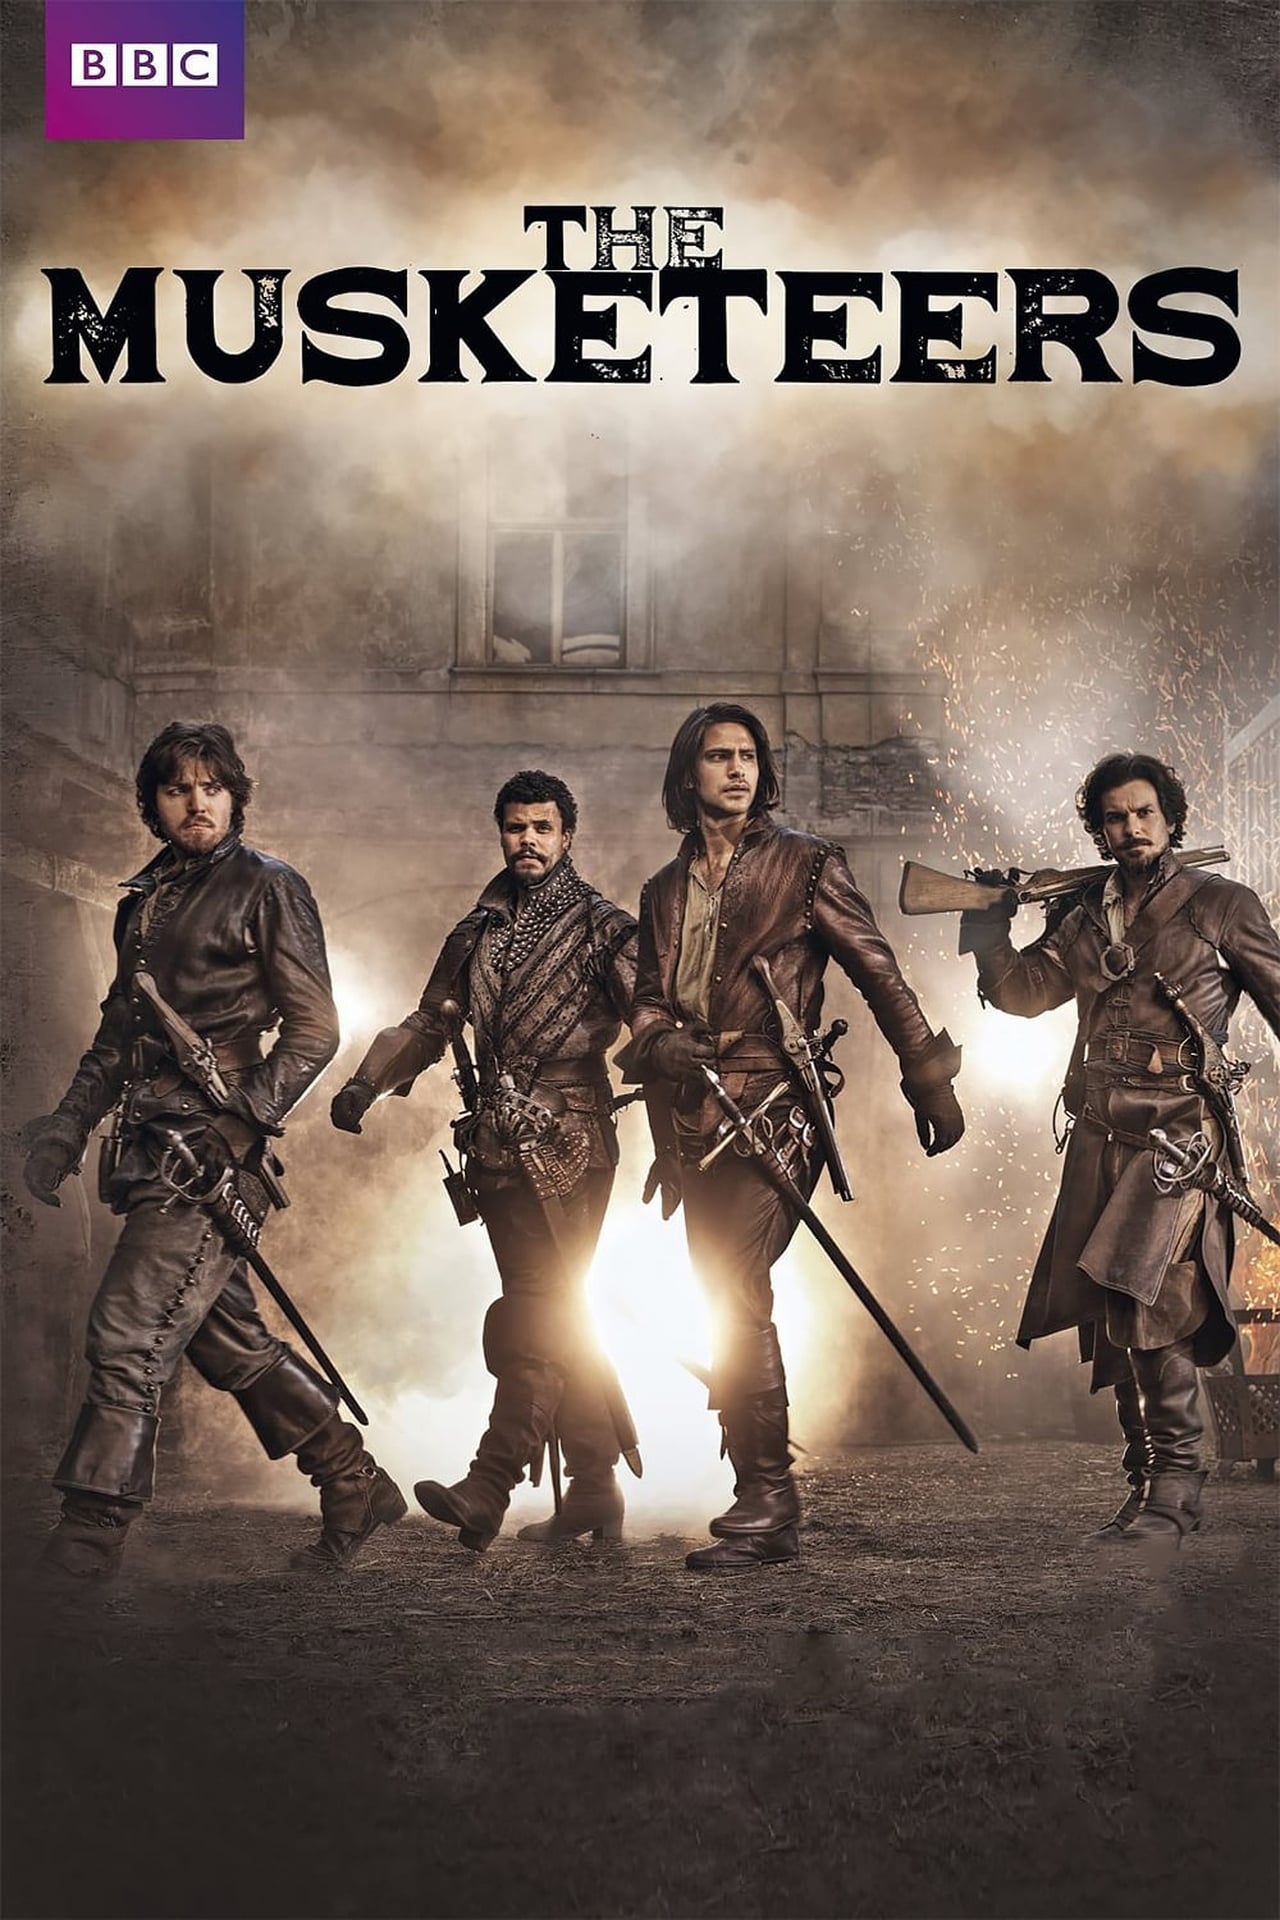 The Musketeers (season 2)